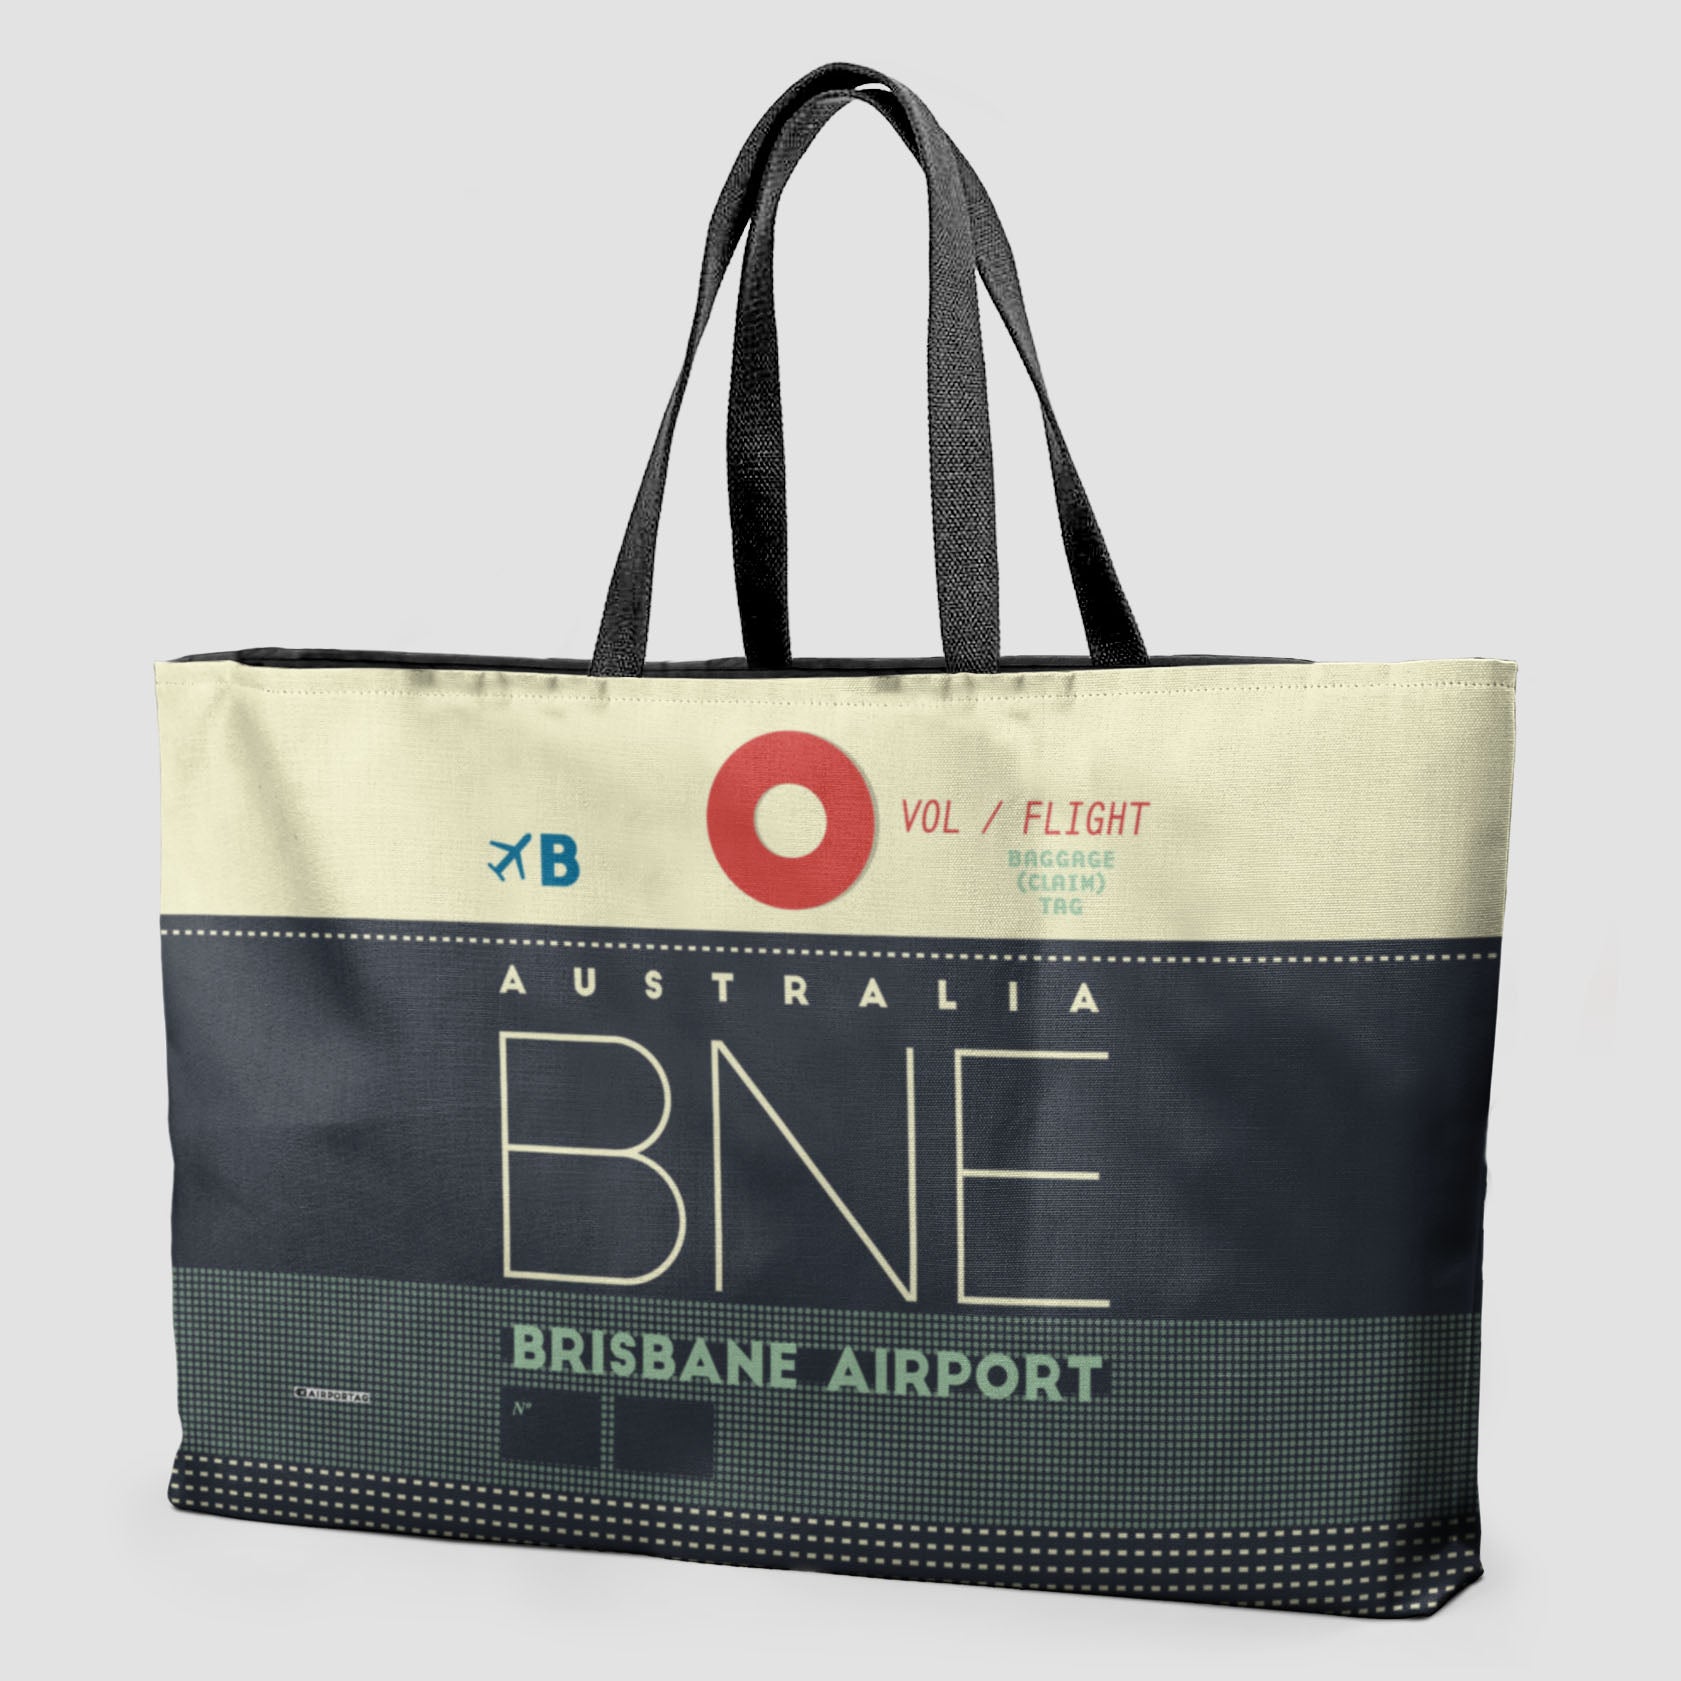 BNE - Weekender Bag - Airportag